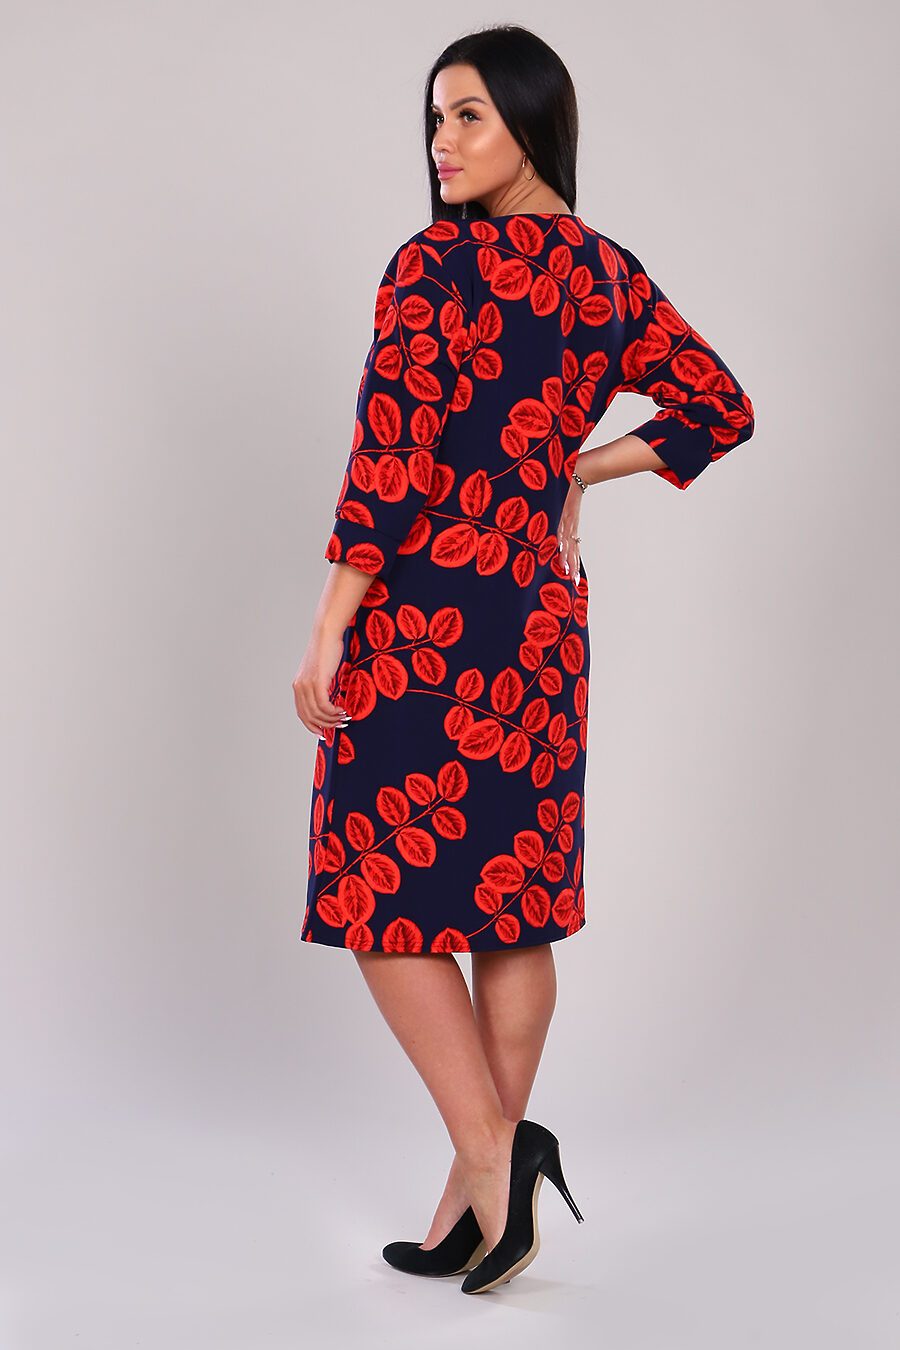 Платье для женщин НАТАЛИ 741201 купить оптом от производителя. Совместная покупка женской одежды в OptMoyo